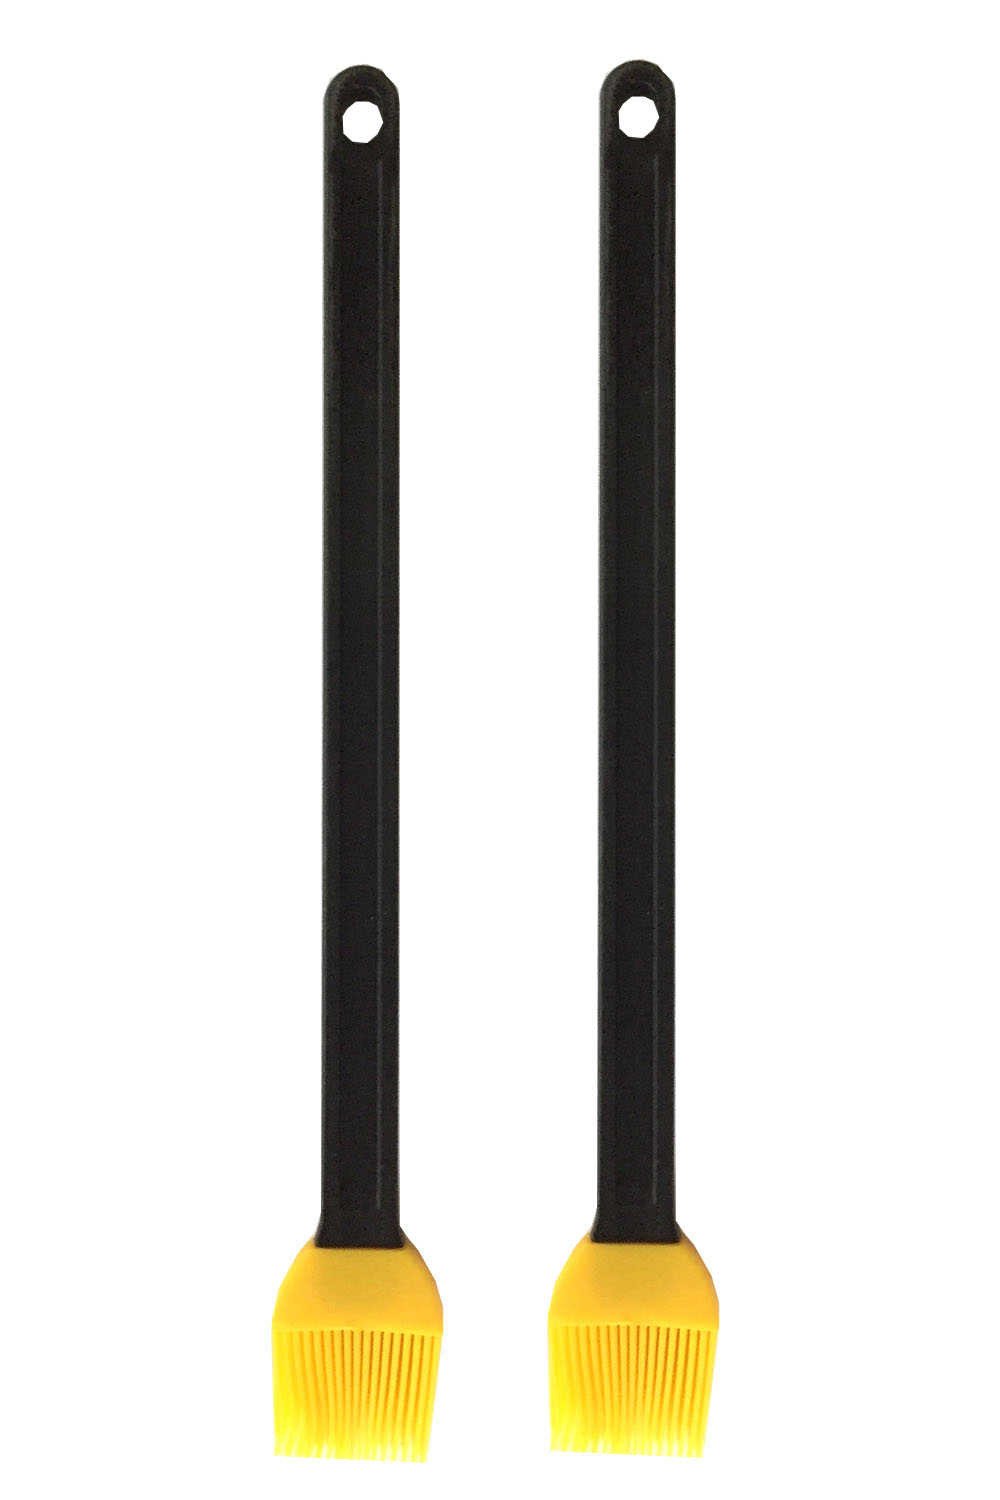 2er Set BBQ Silikonpinsel | Grillpinsel Silikon 36 cm lang | 2er_Silikonpinsel